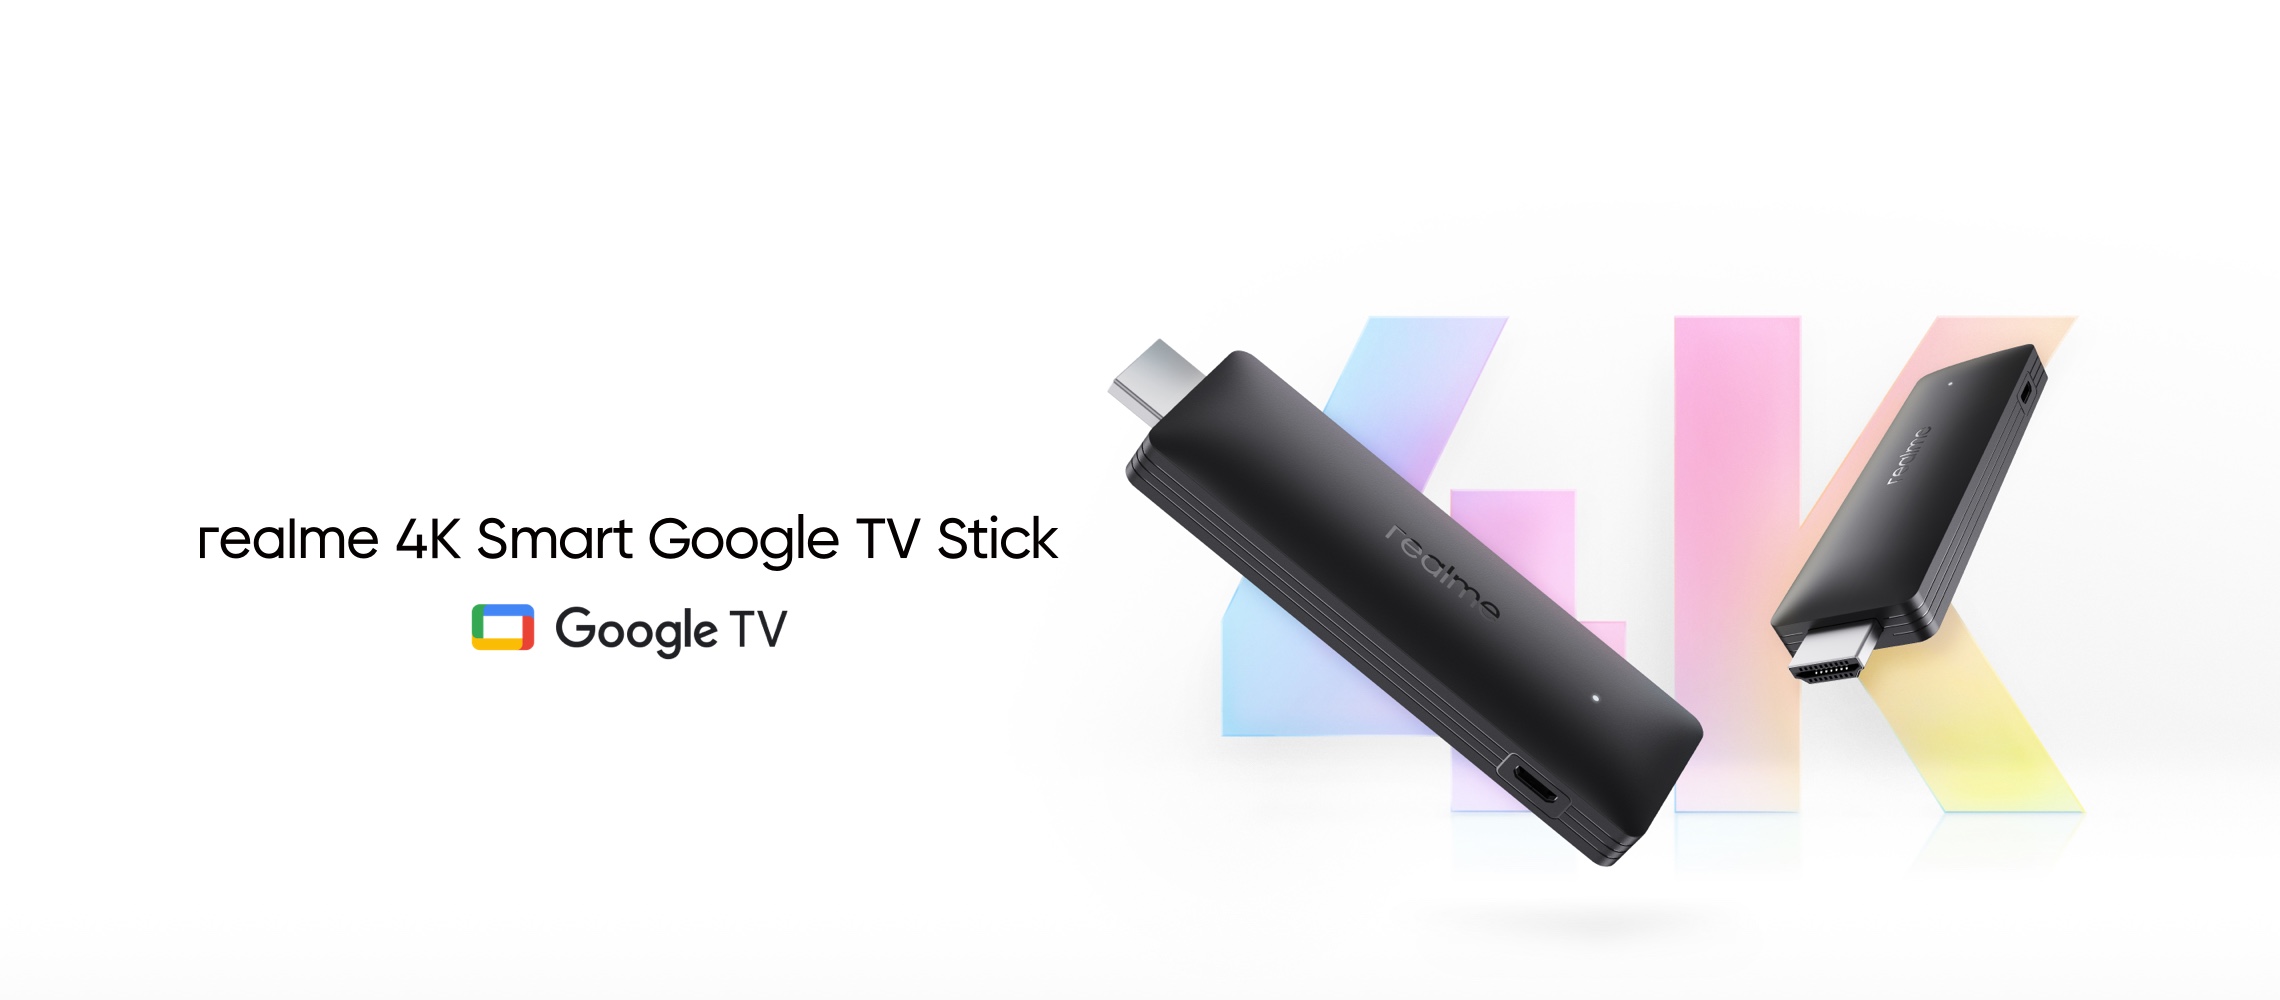 Realme 4K Smart Google TV Stick: decodificador estilo stick con 2 GB de RAM, chip de cuatro núcleos y Google TV a bordo por 53 dólares